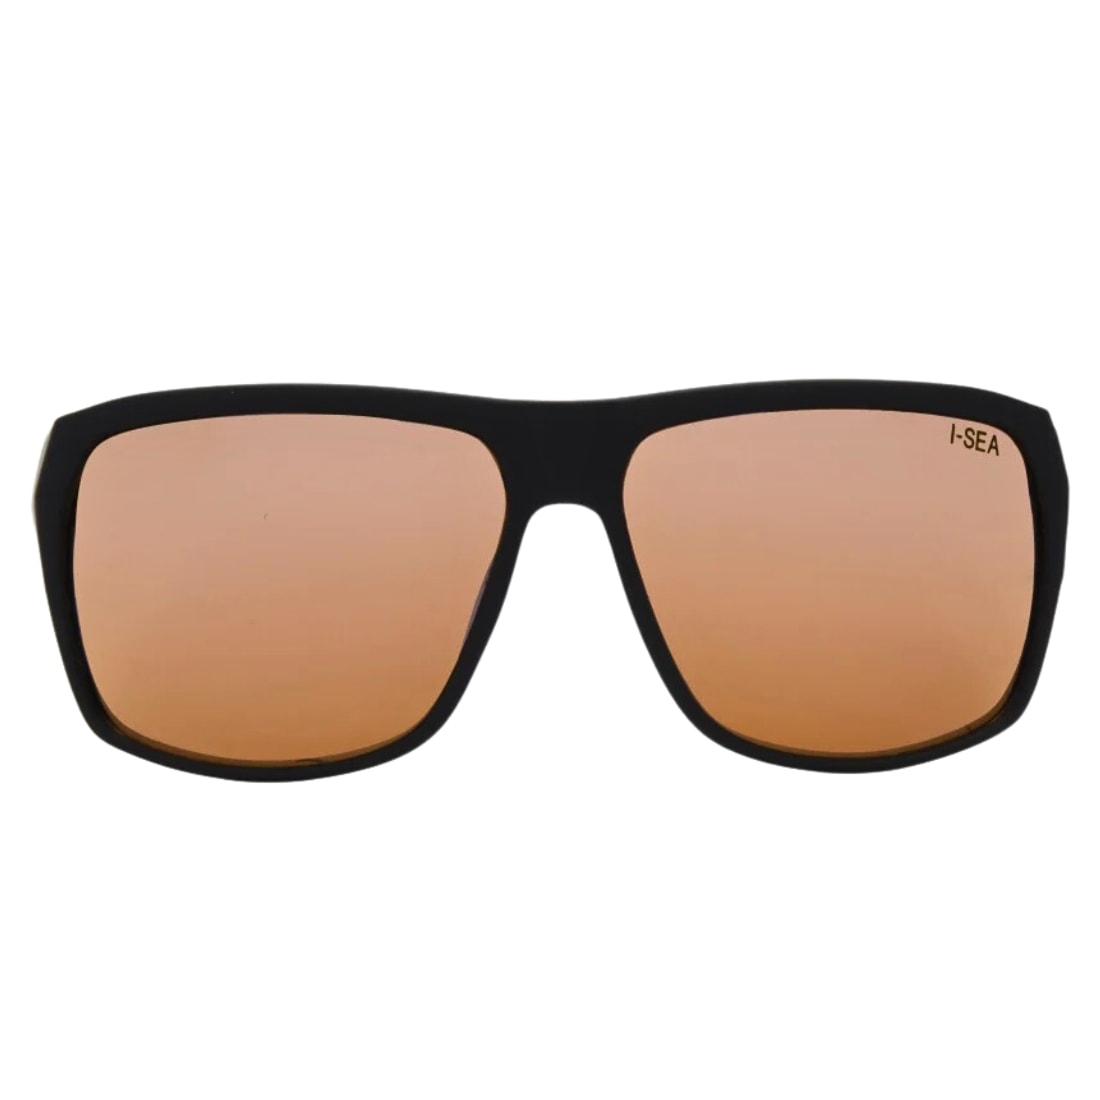 I-Sea Nick I Polarised Sunglasses - Black/Copper Polarized - Square/Rectangular Sunglasses by I-Sea